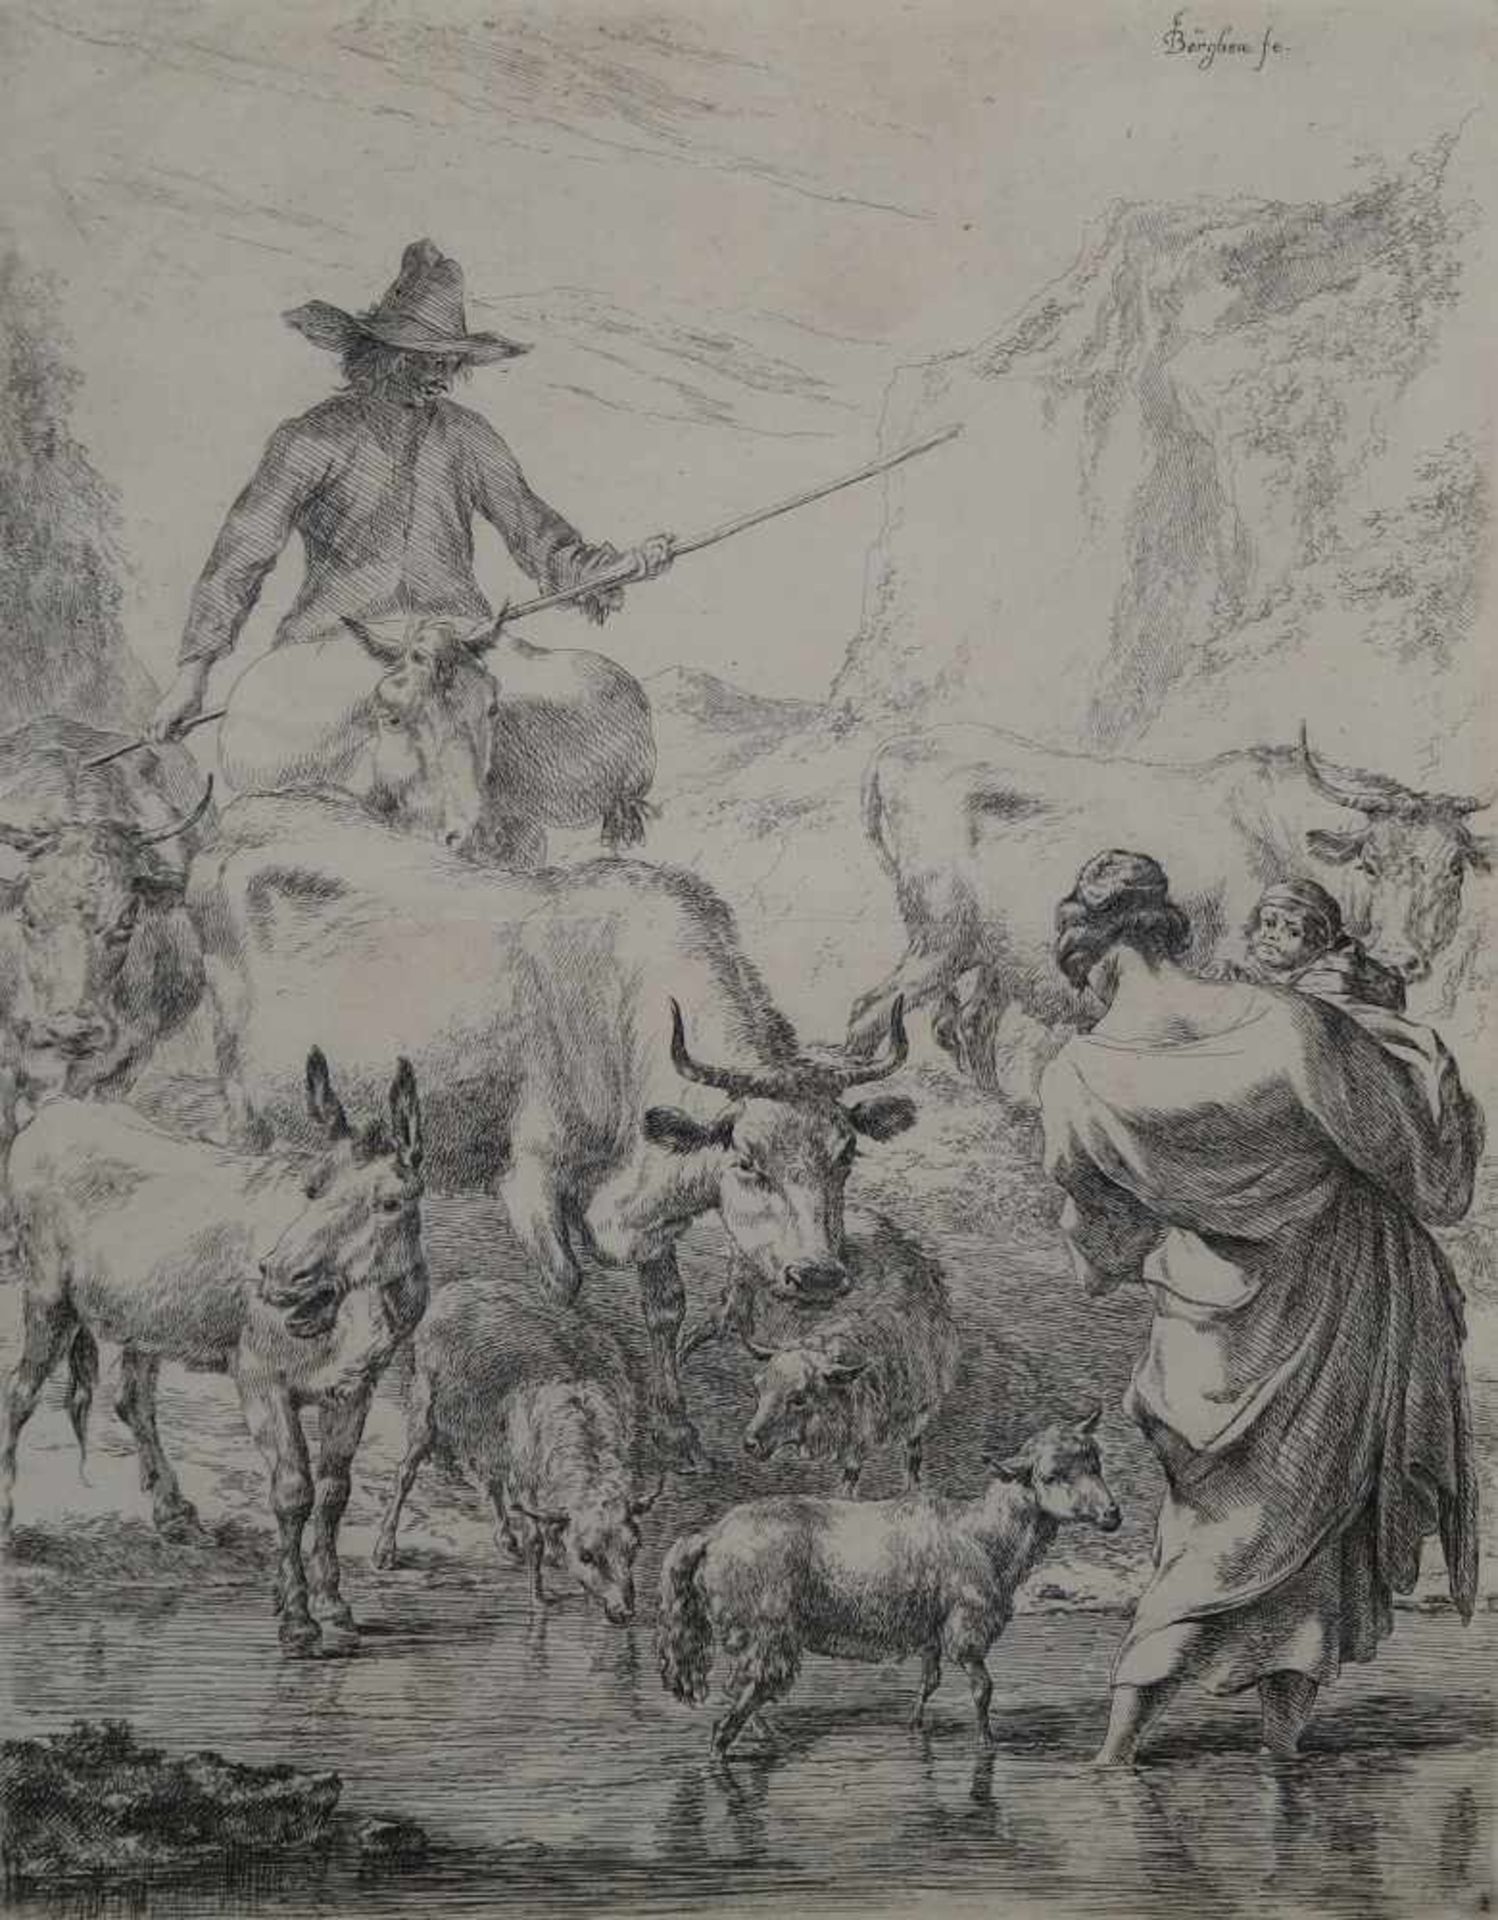 BERGHEM (Berchem) Nicolaes Pietersz , 1620-1683 [NL]."La traversée du ruisseau", eau-forte (26.5 x